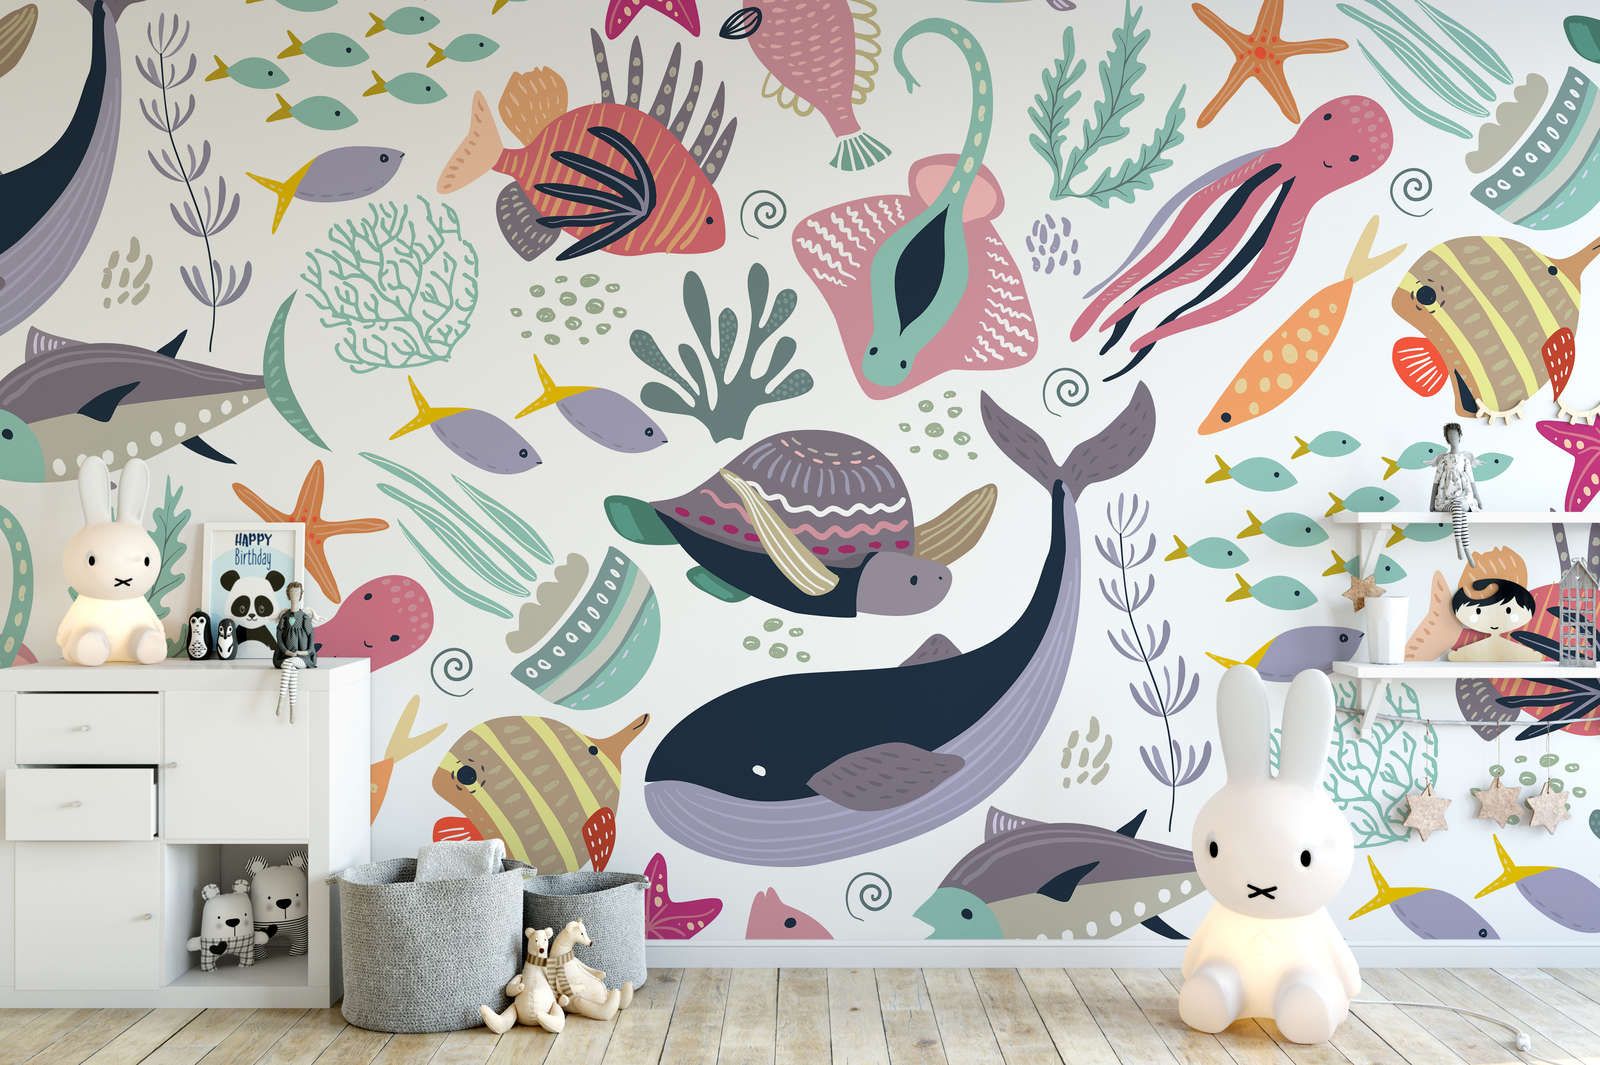             Kinderkamer muurschildering met onderwaterdieren - Glad & licht glanzend vlies
        